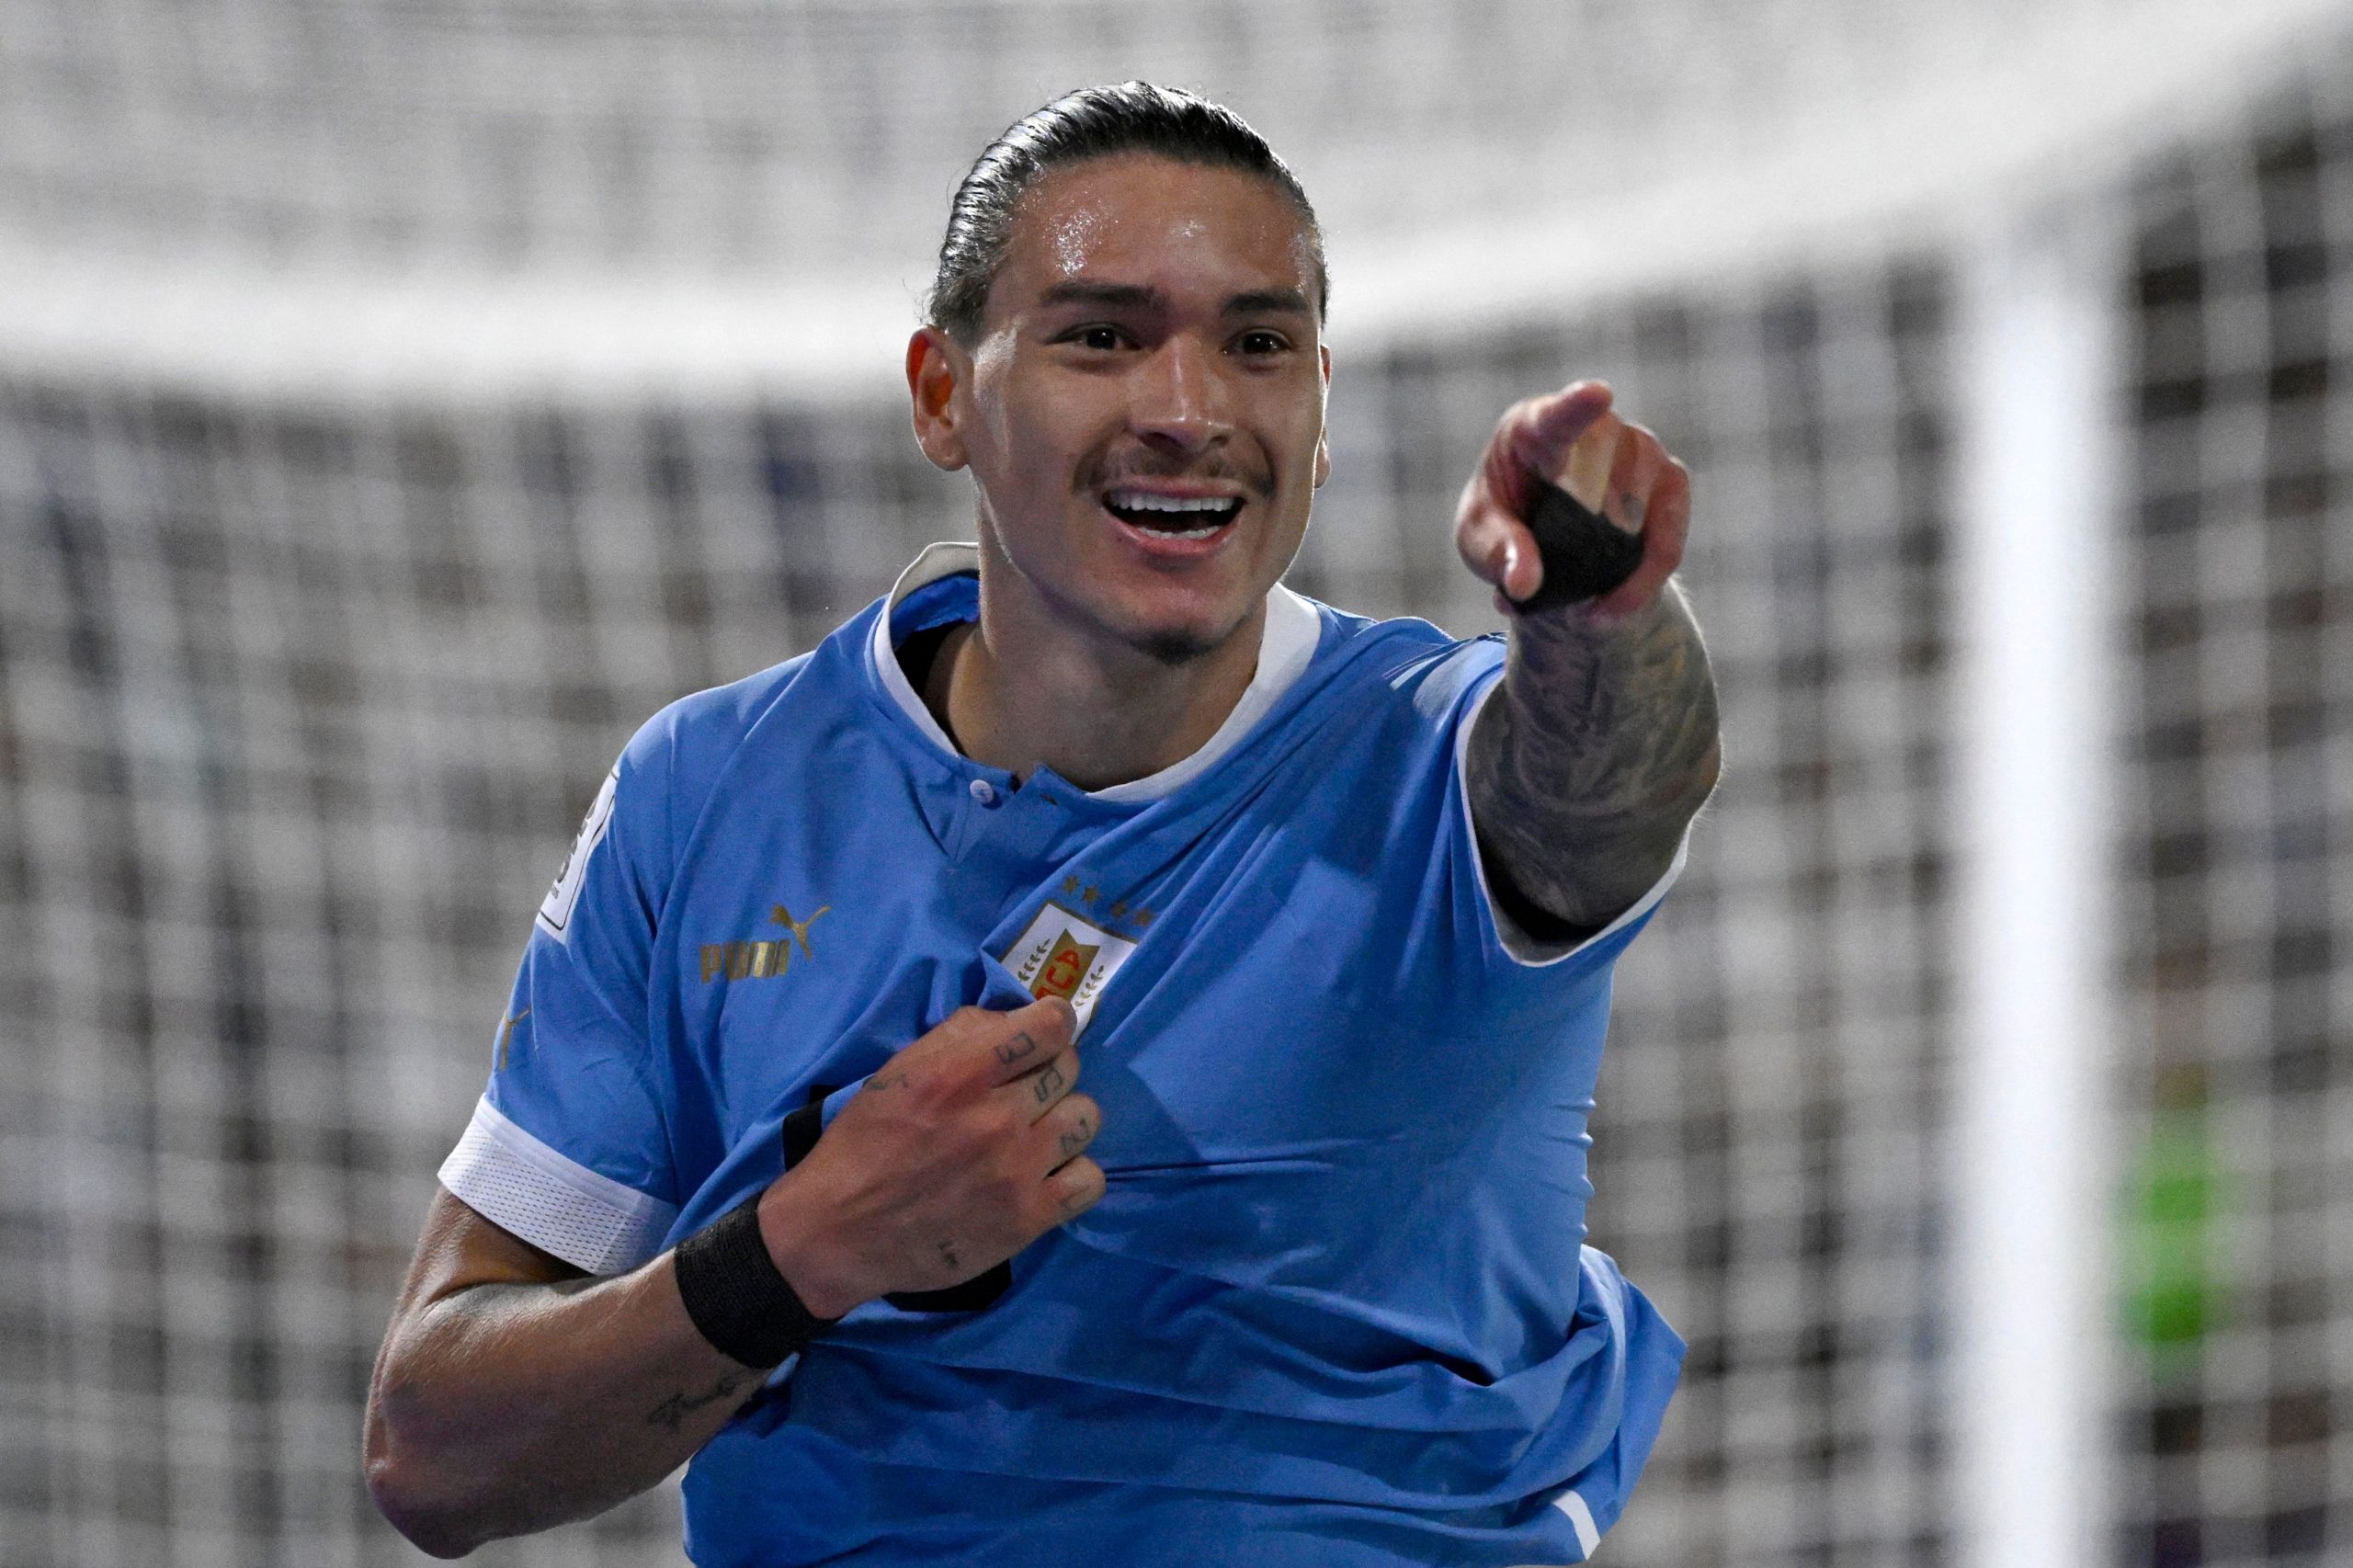 Darwin Núñez na vitória do Uruguai sobre a Argentina fora de casa - (Foto: Luis Robayo/AFP via Getty Images)